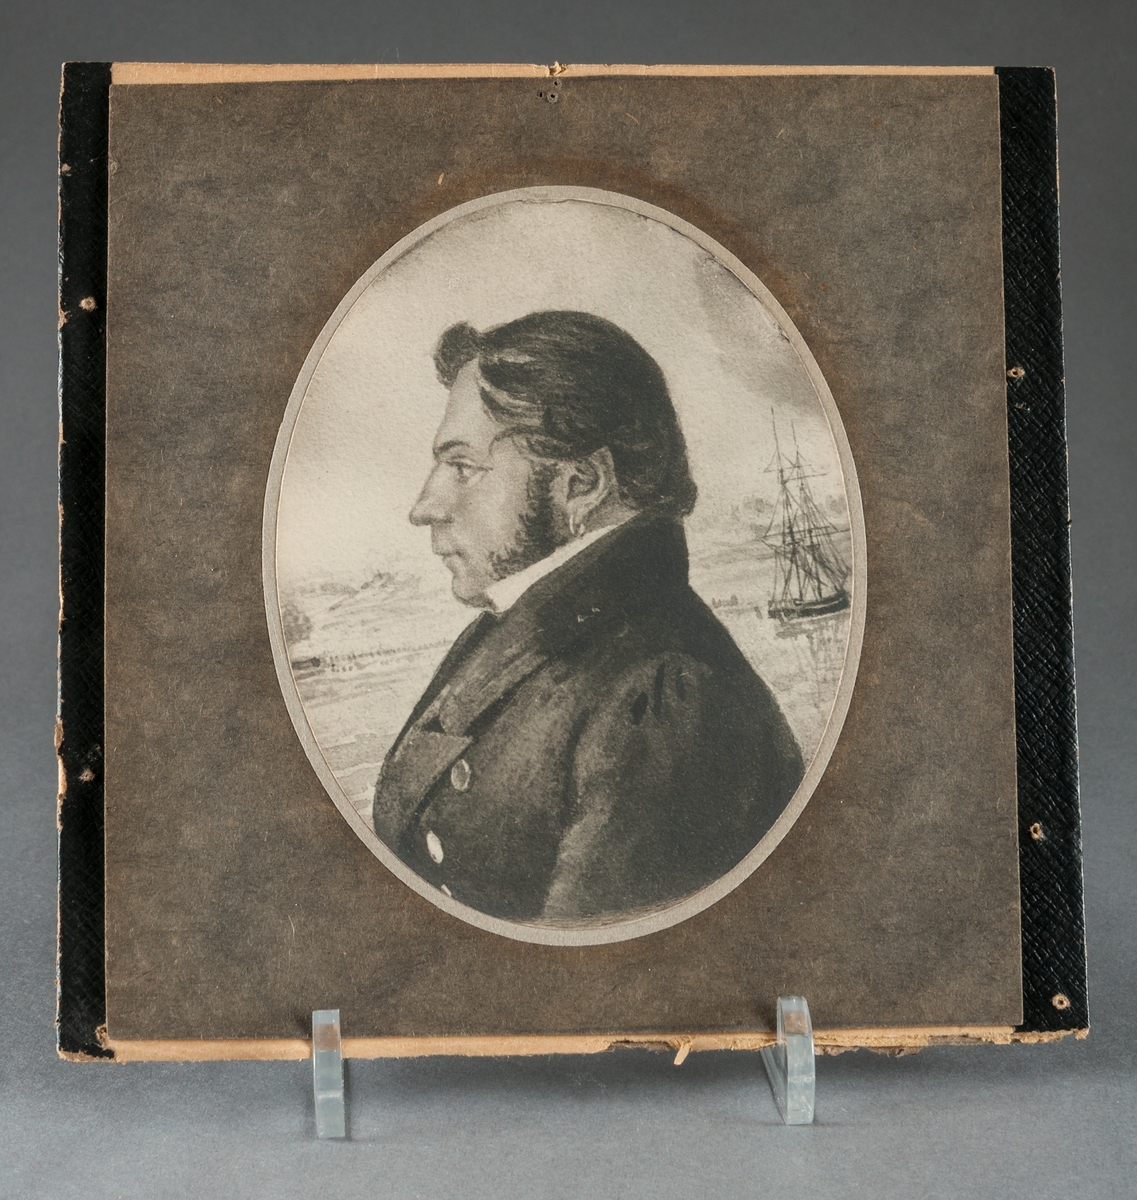 Mansporträtt i profil, grvyr. Till höger om axeln ett tvåmastat skepp. Ovalt porträtt i rektangulär svart ram. 
Porträtt föreställande Sjökapten C. J. Bolin.